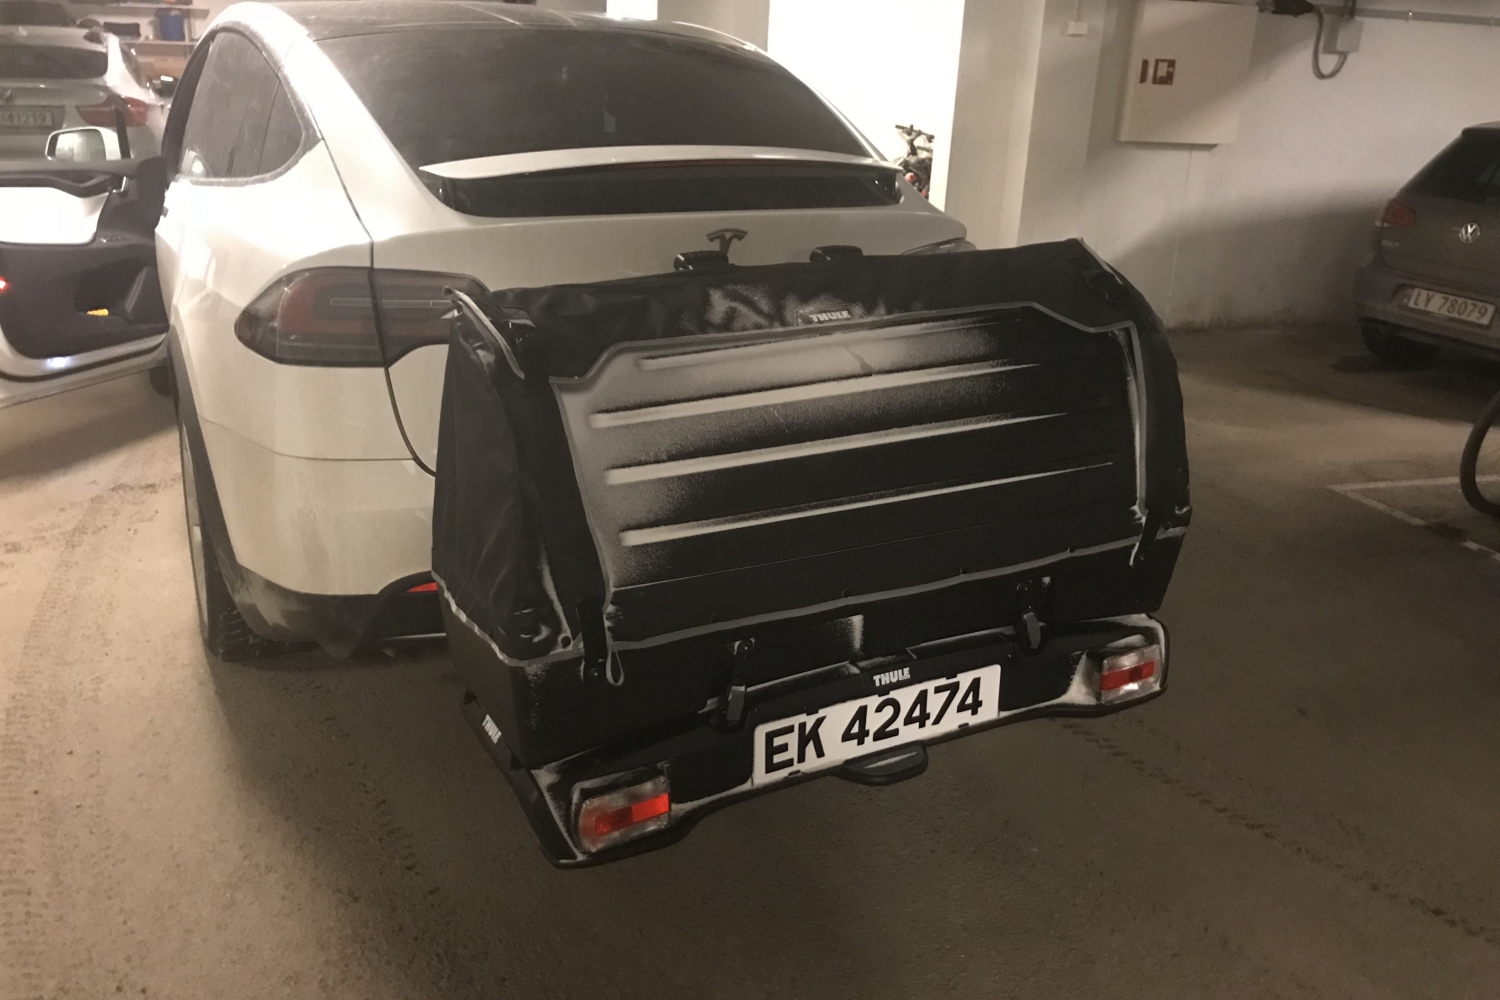 A Beautiful Midnightsun Tour from Tromsø with eco-friendly Tesla Model X